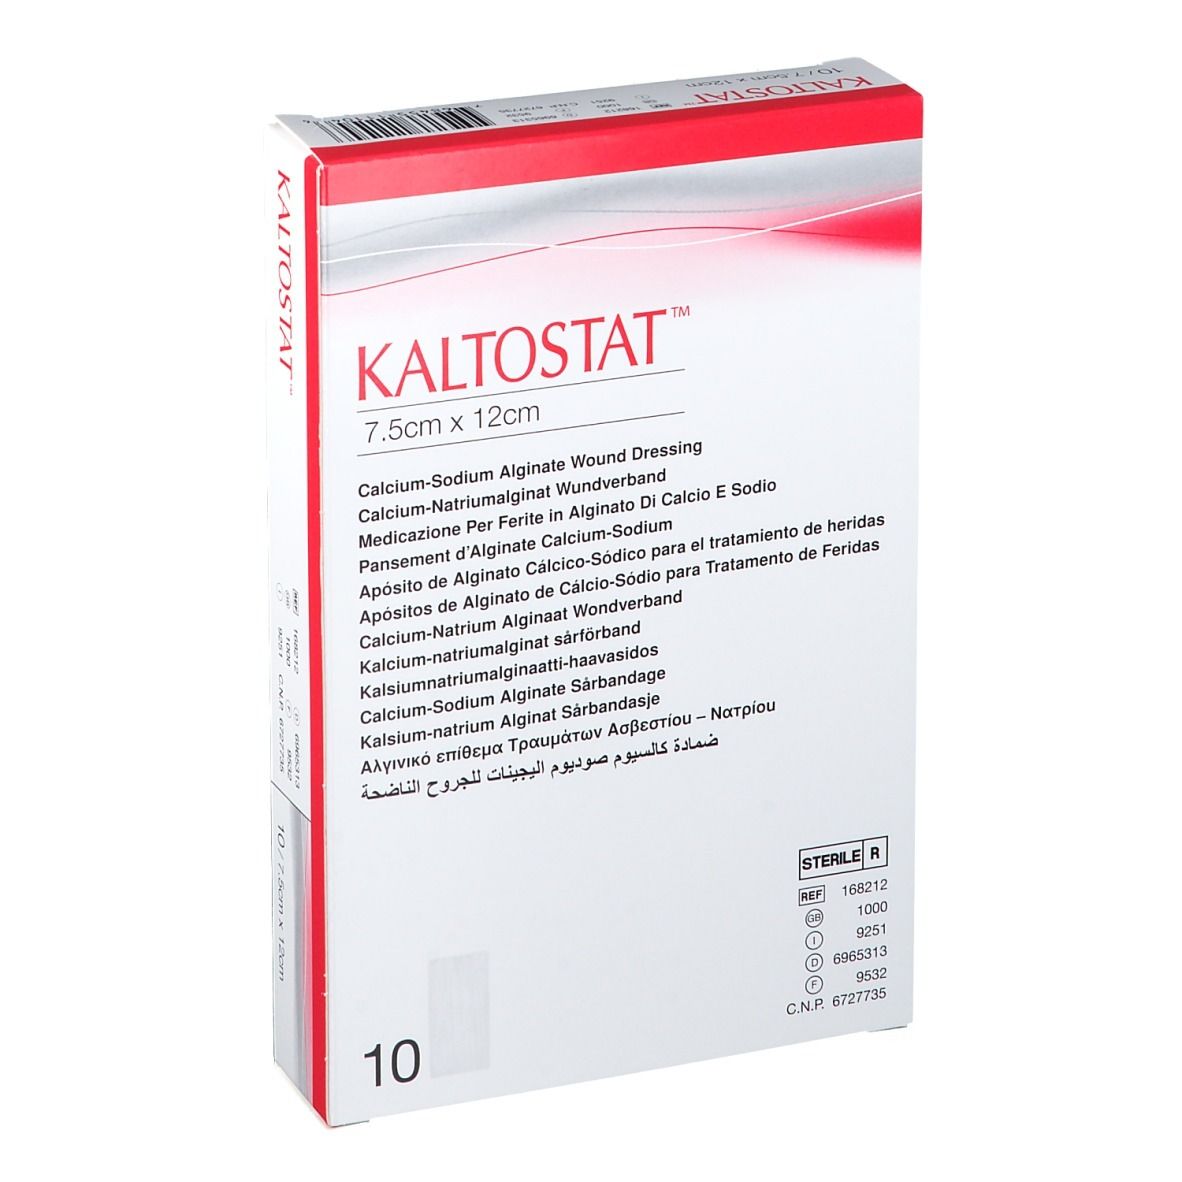 Image of Kaltostat Steriler Verband 7,5cm x 12cm